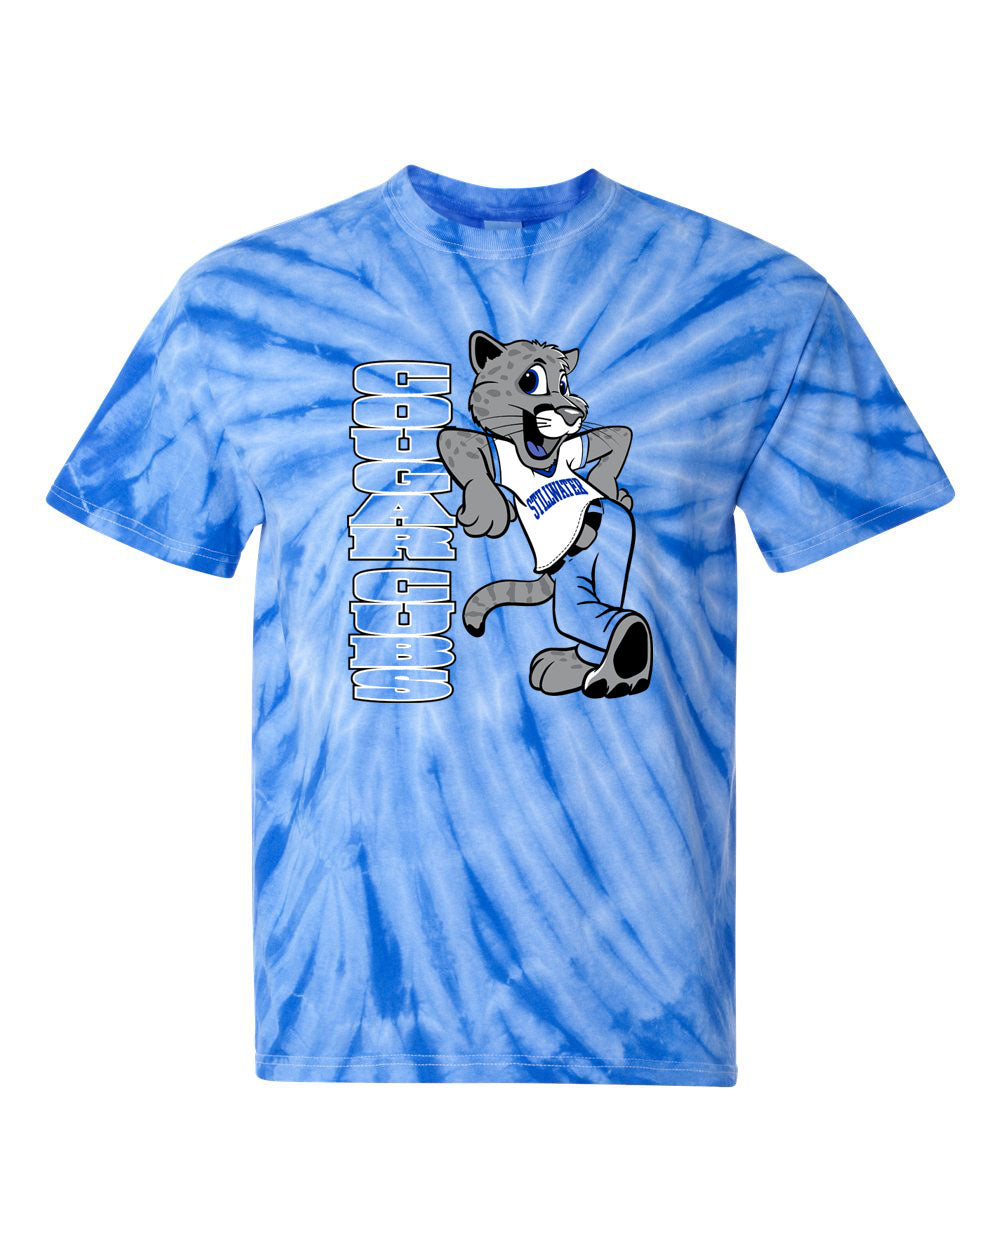 Stillwater Tie Dye t-shirt Design 21